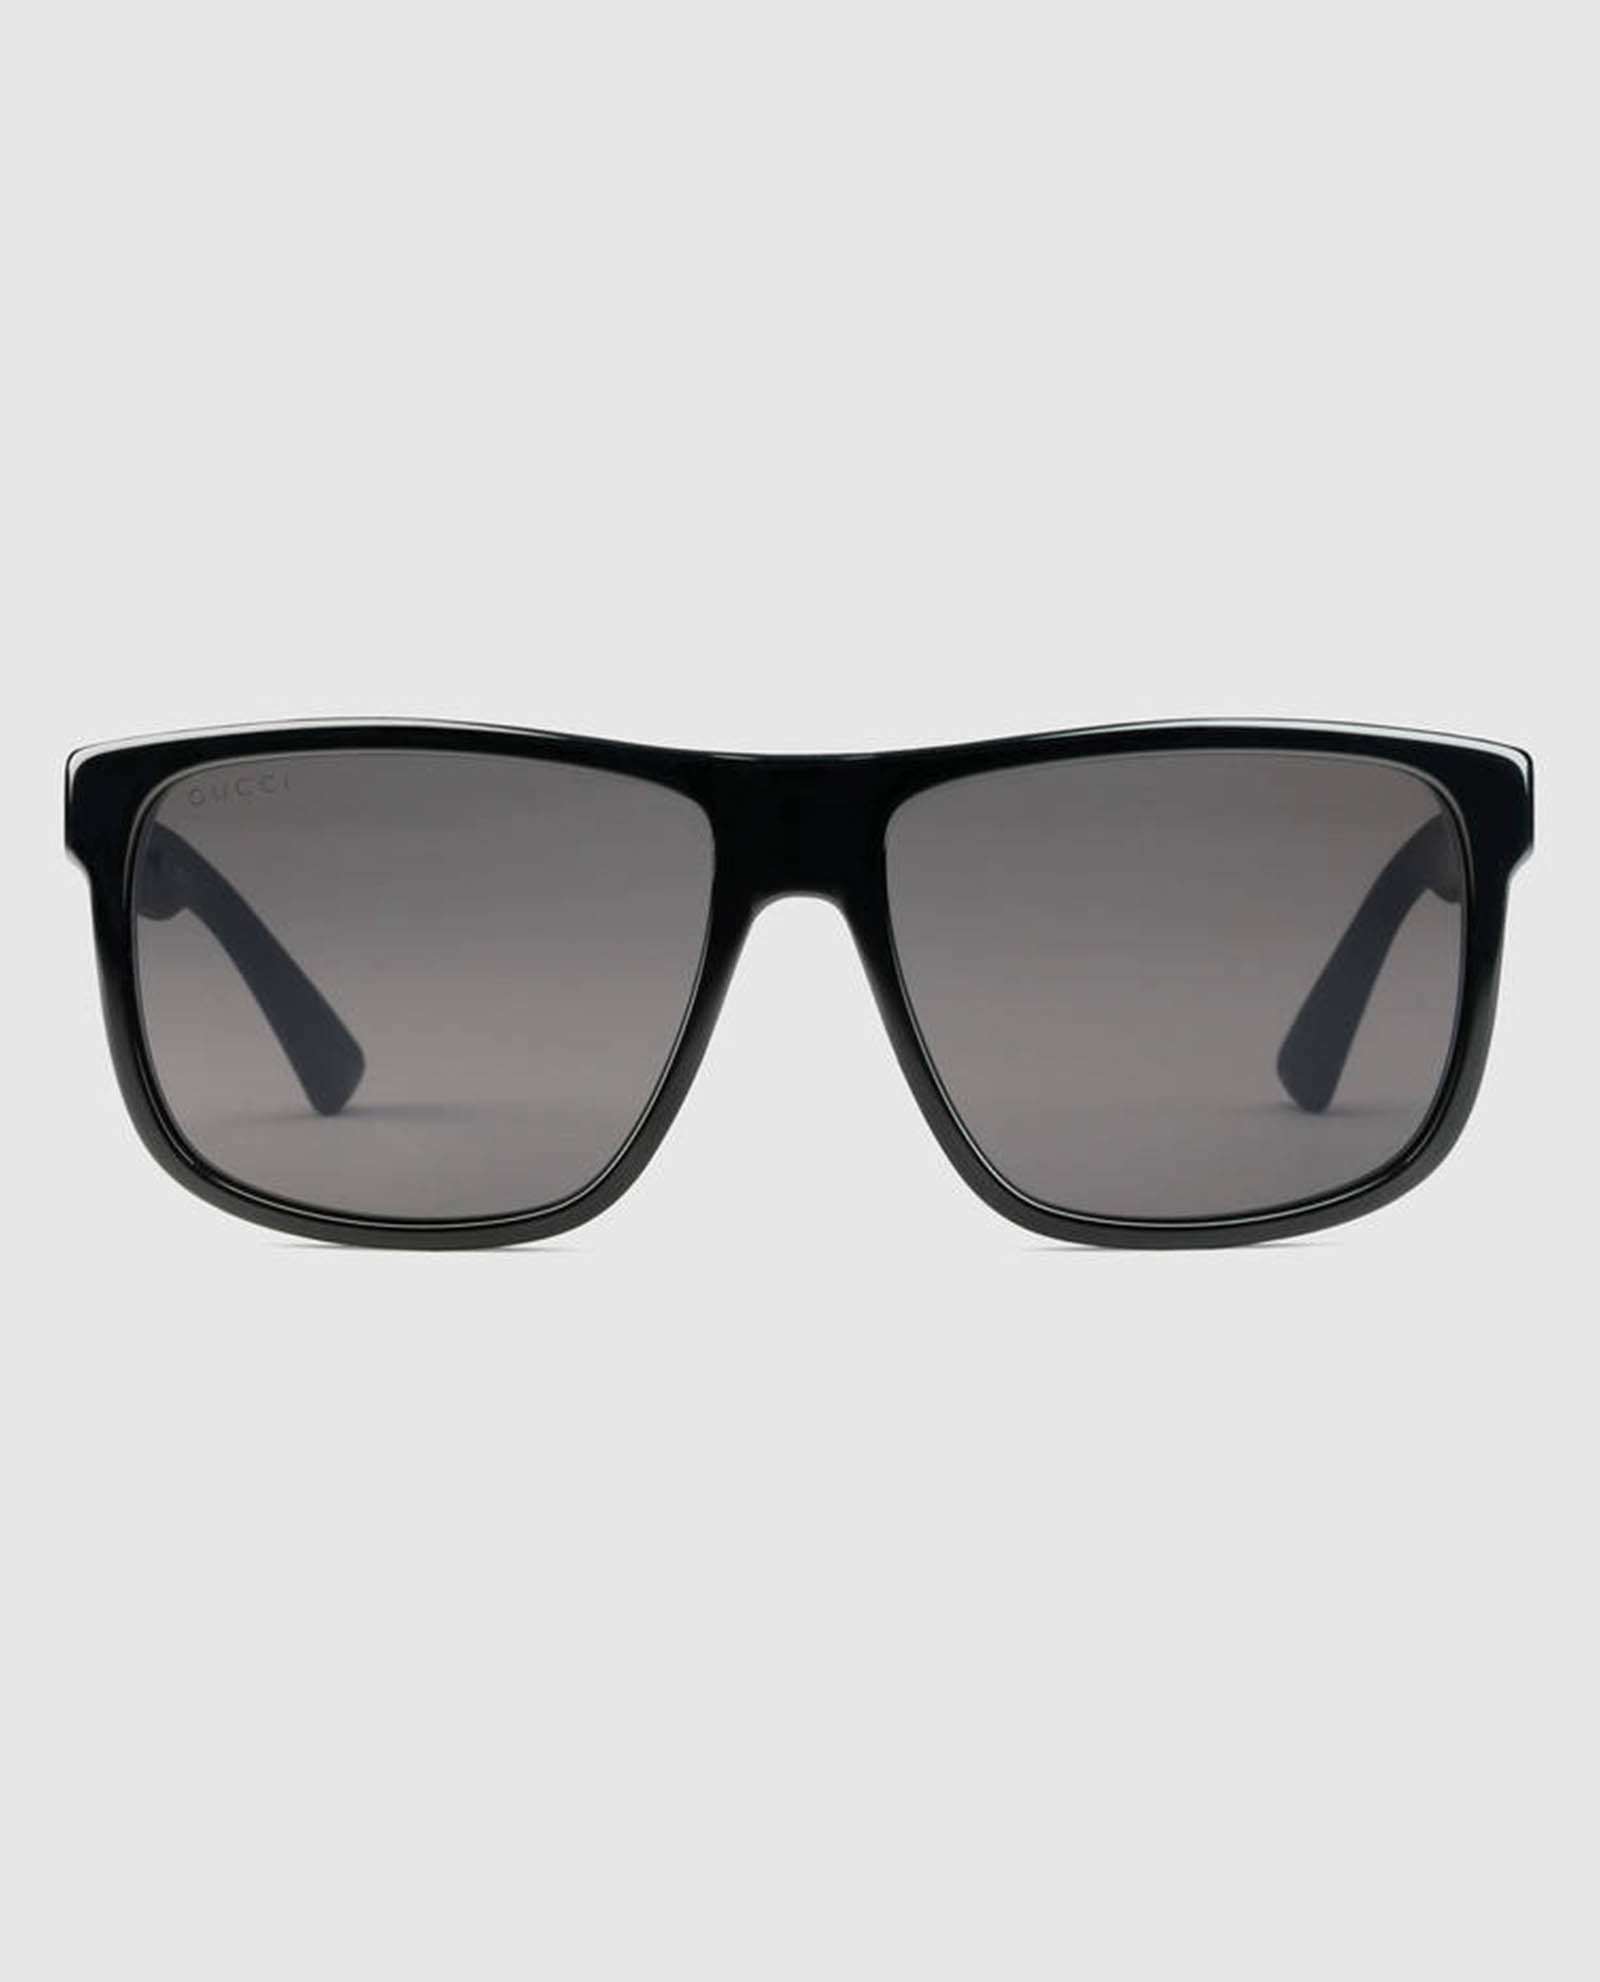 461692_J1171_1013_001_100_0000_Light-Square-frame-acetate-sunglasses-gucci-man